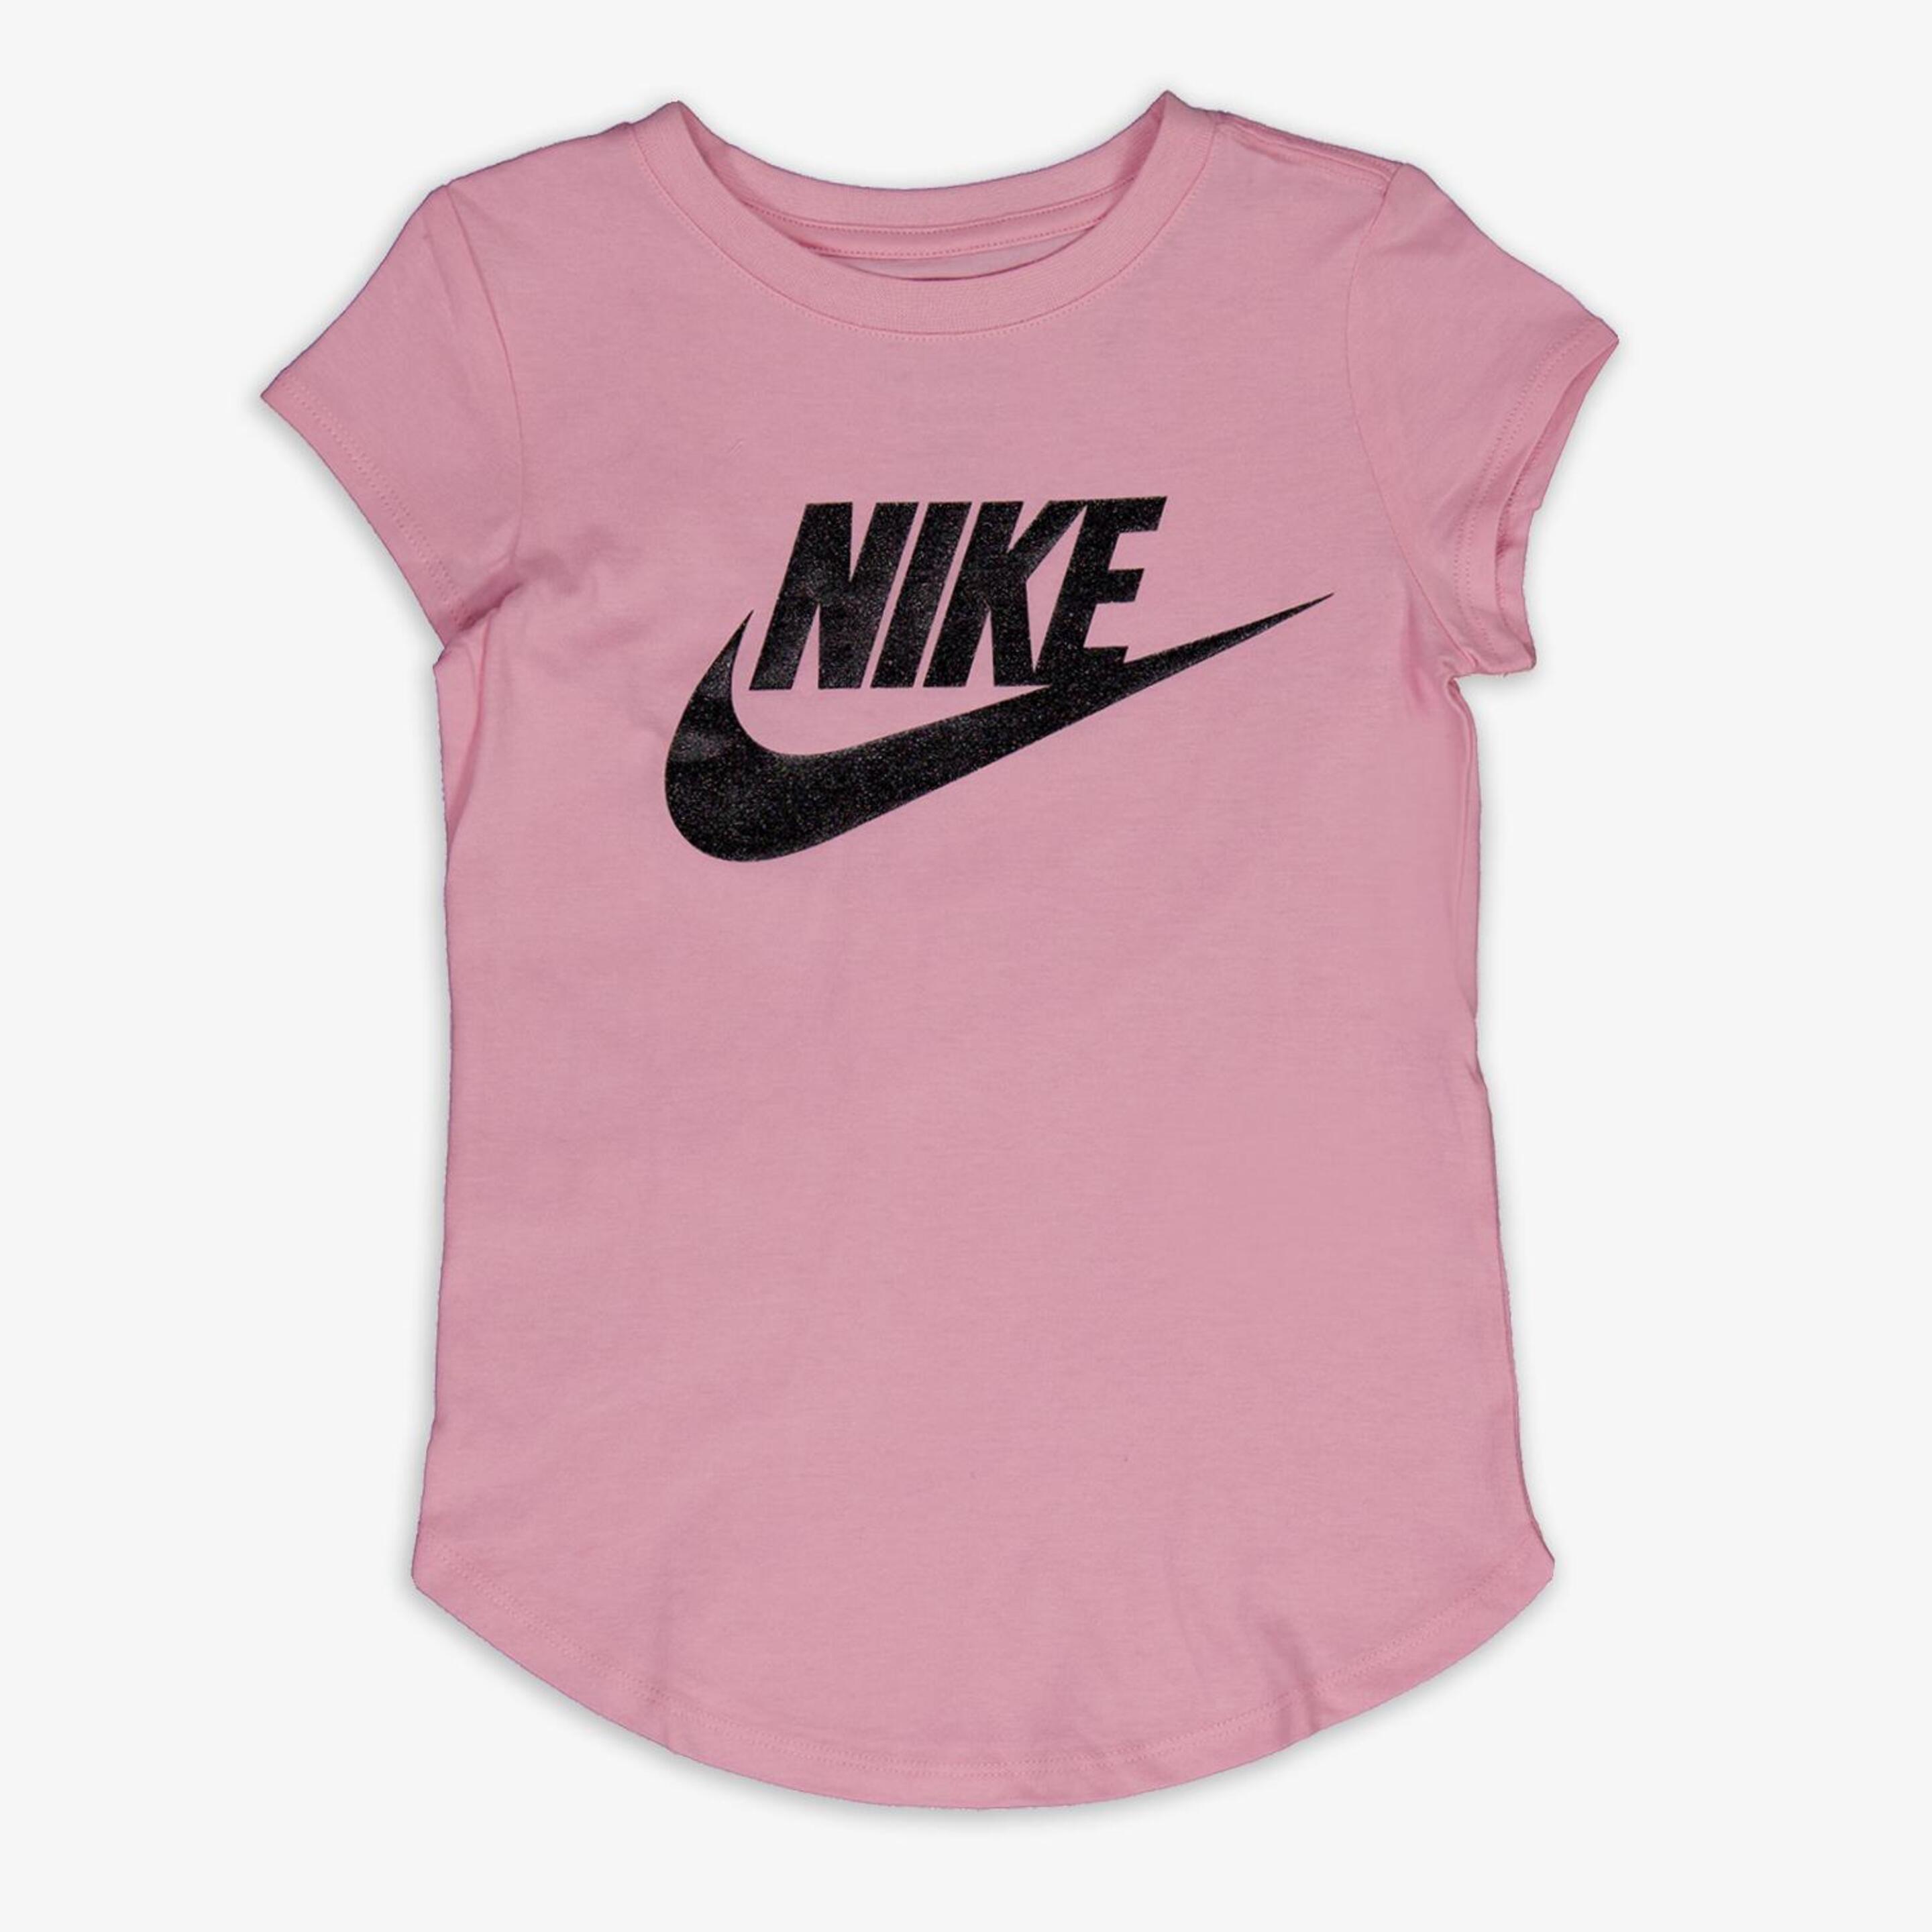 Camiseta Nike - rosa - Camiseta Niña